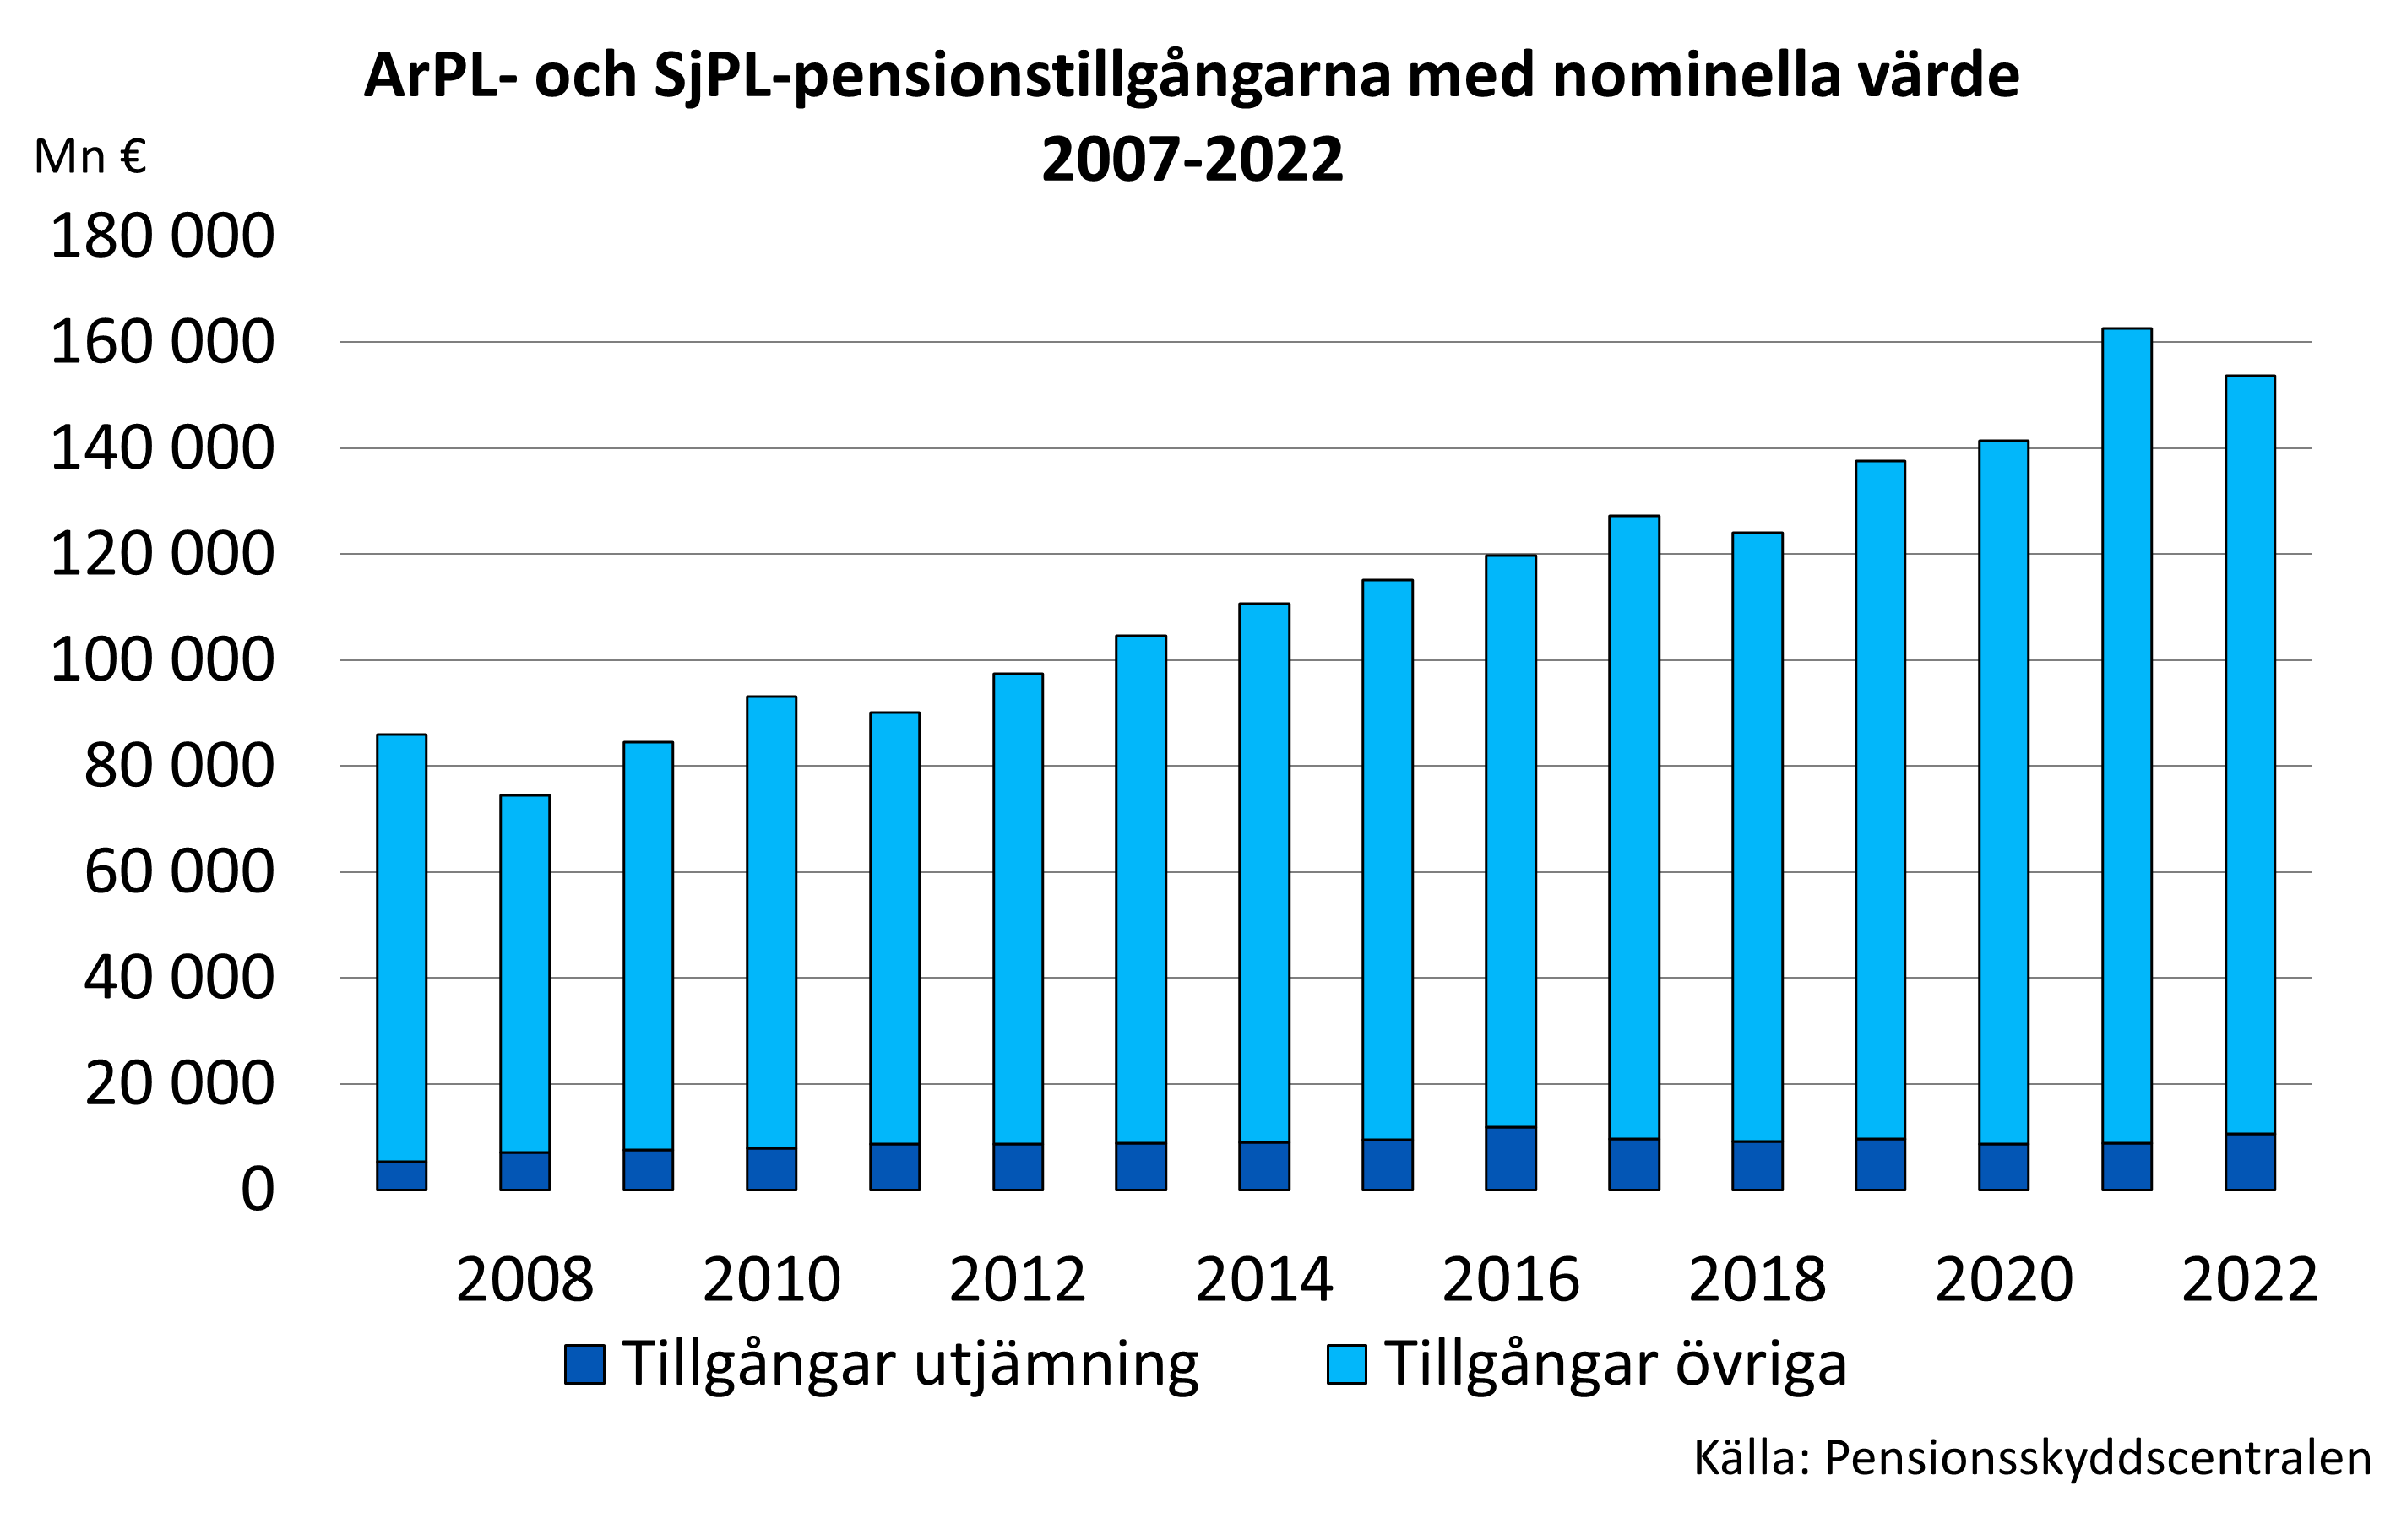 ArPL- och SjPL-pensionstillgångarna med nominella värde 2007-2020